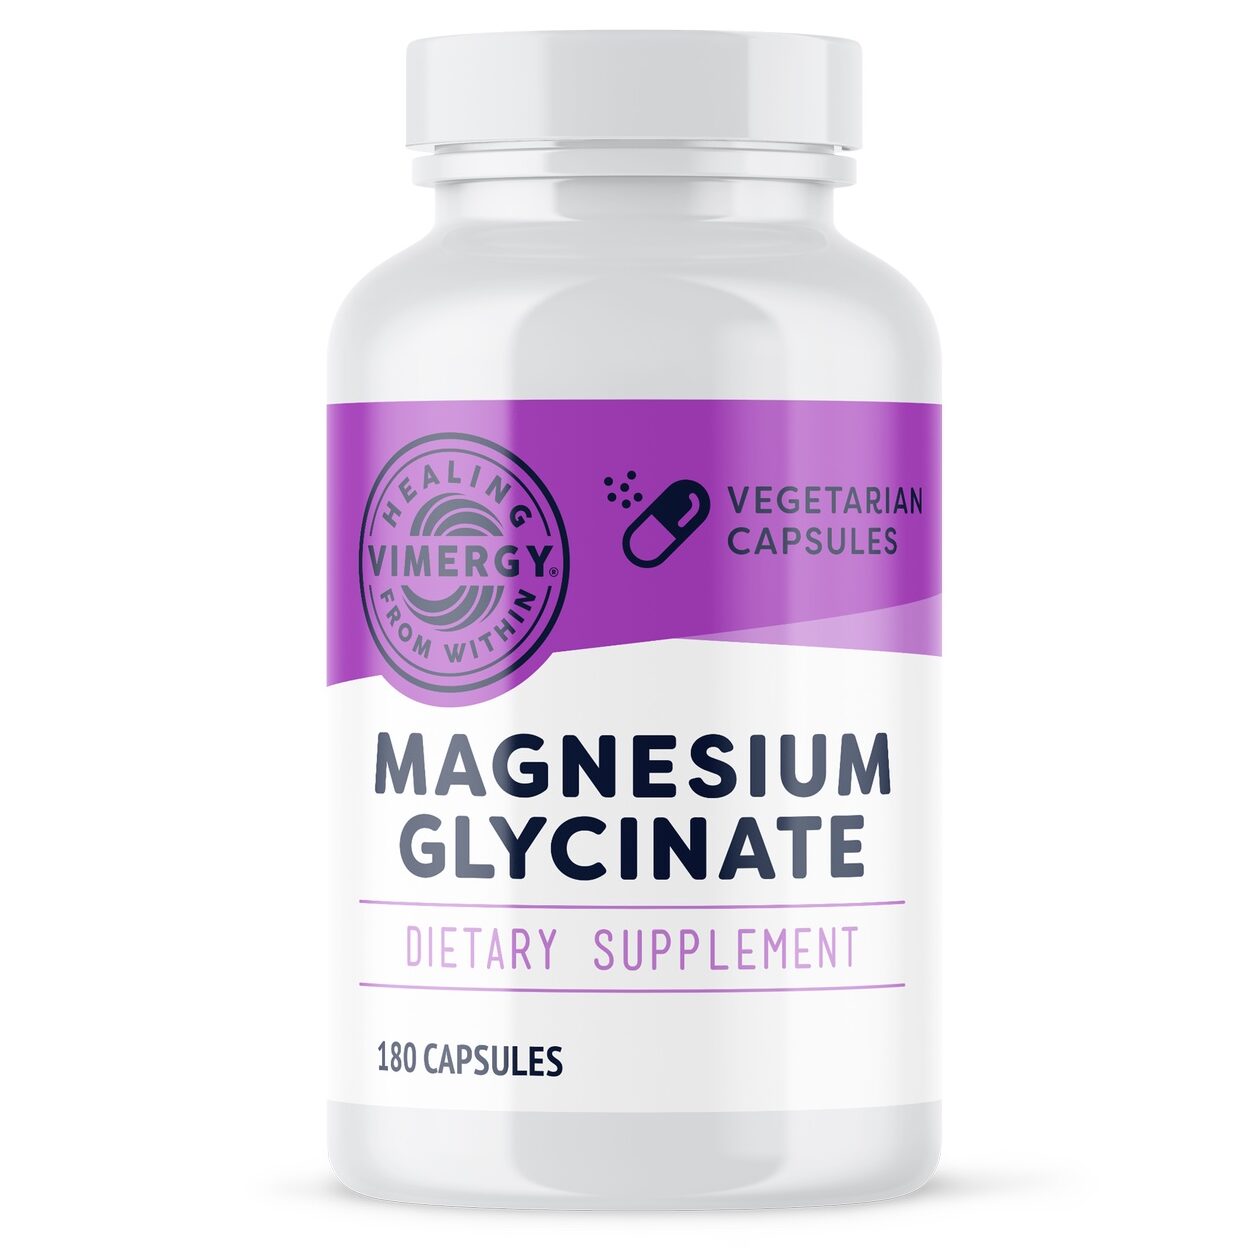 Magnesium Glycinat - Vimergy